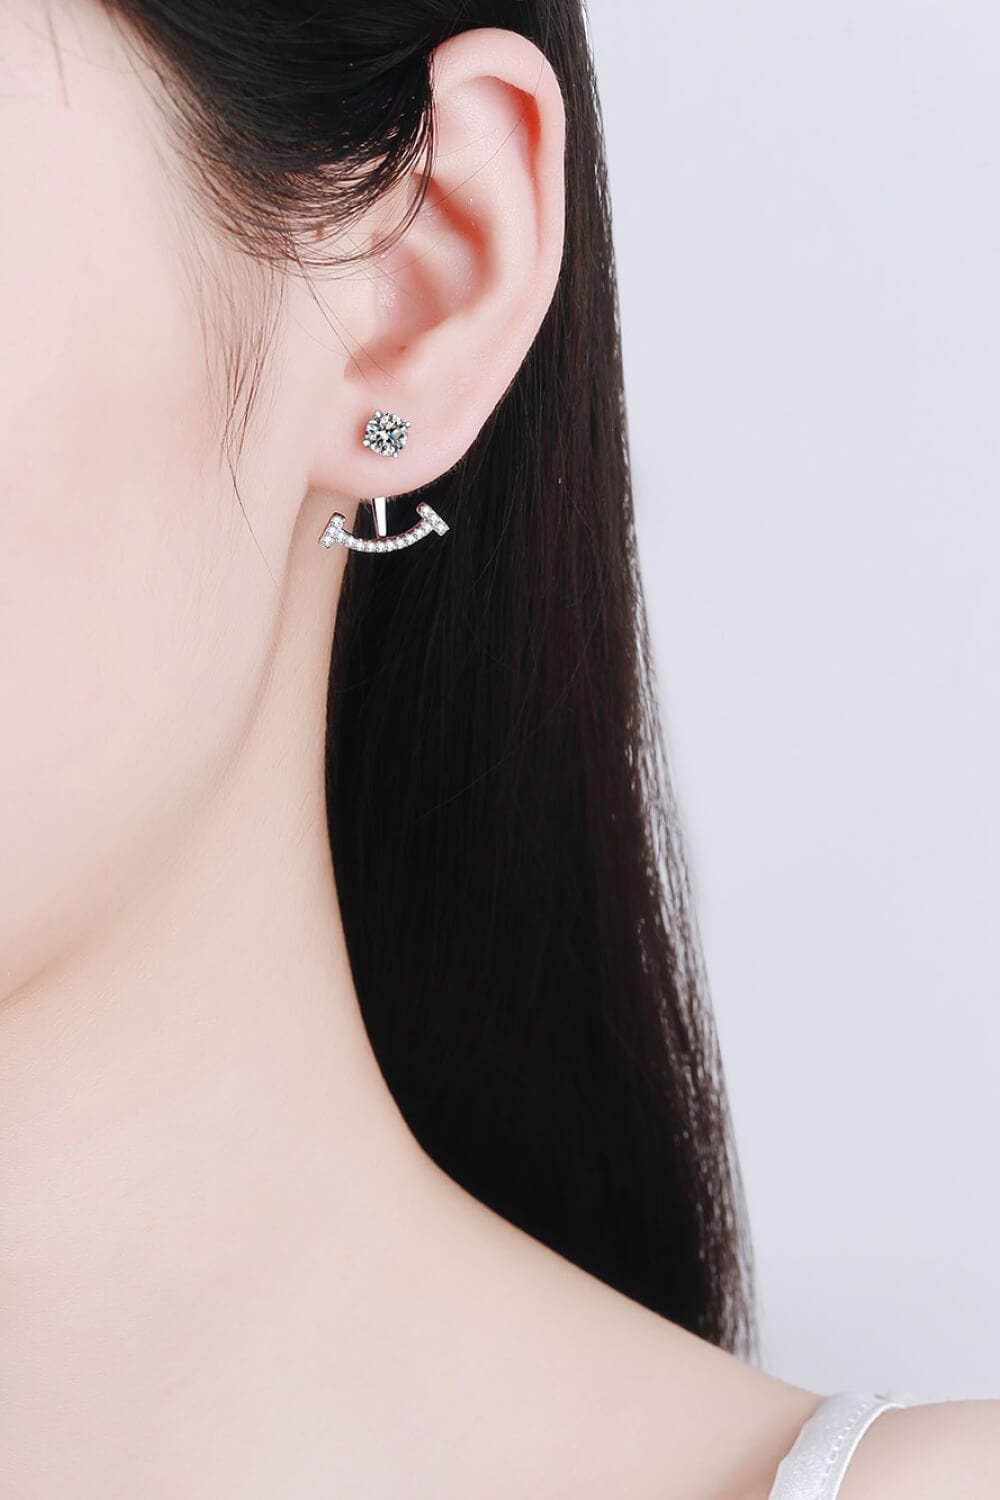 Two Ways To Wear Moissanite Earrings - Body By J'ne